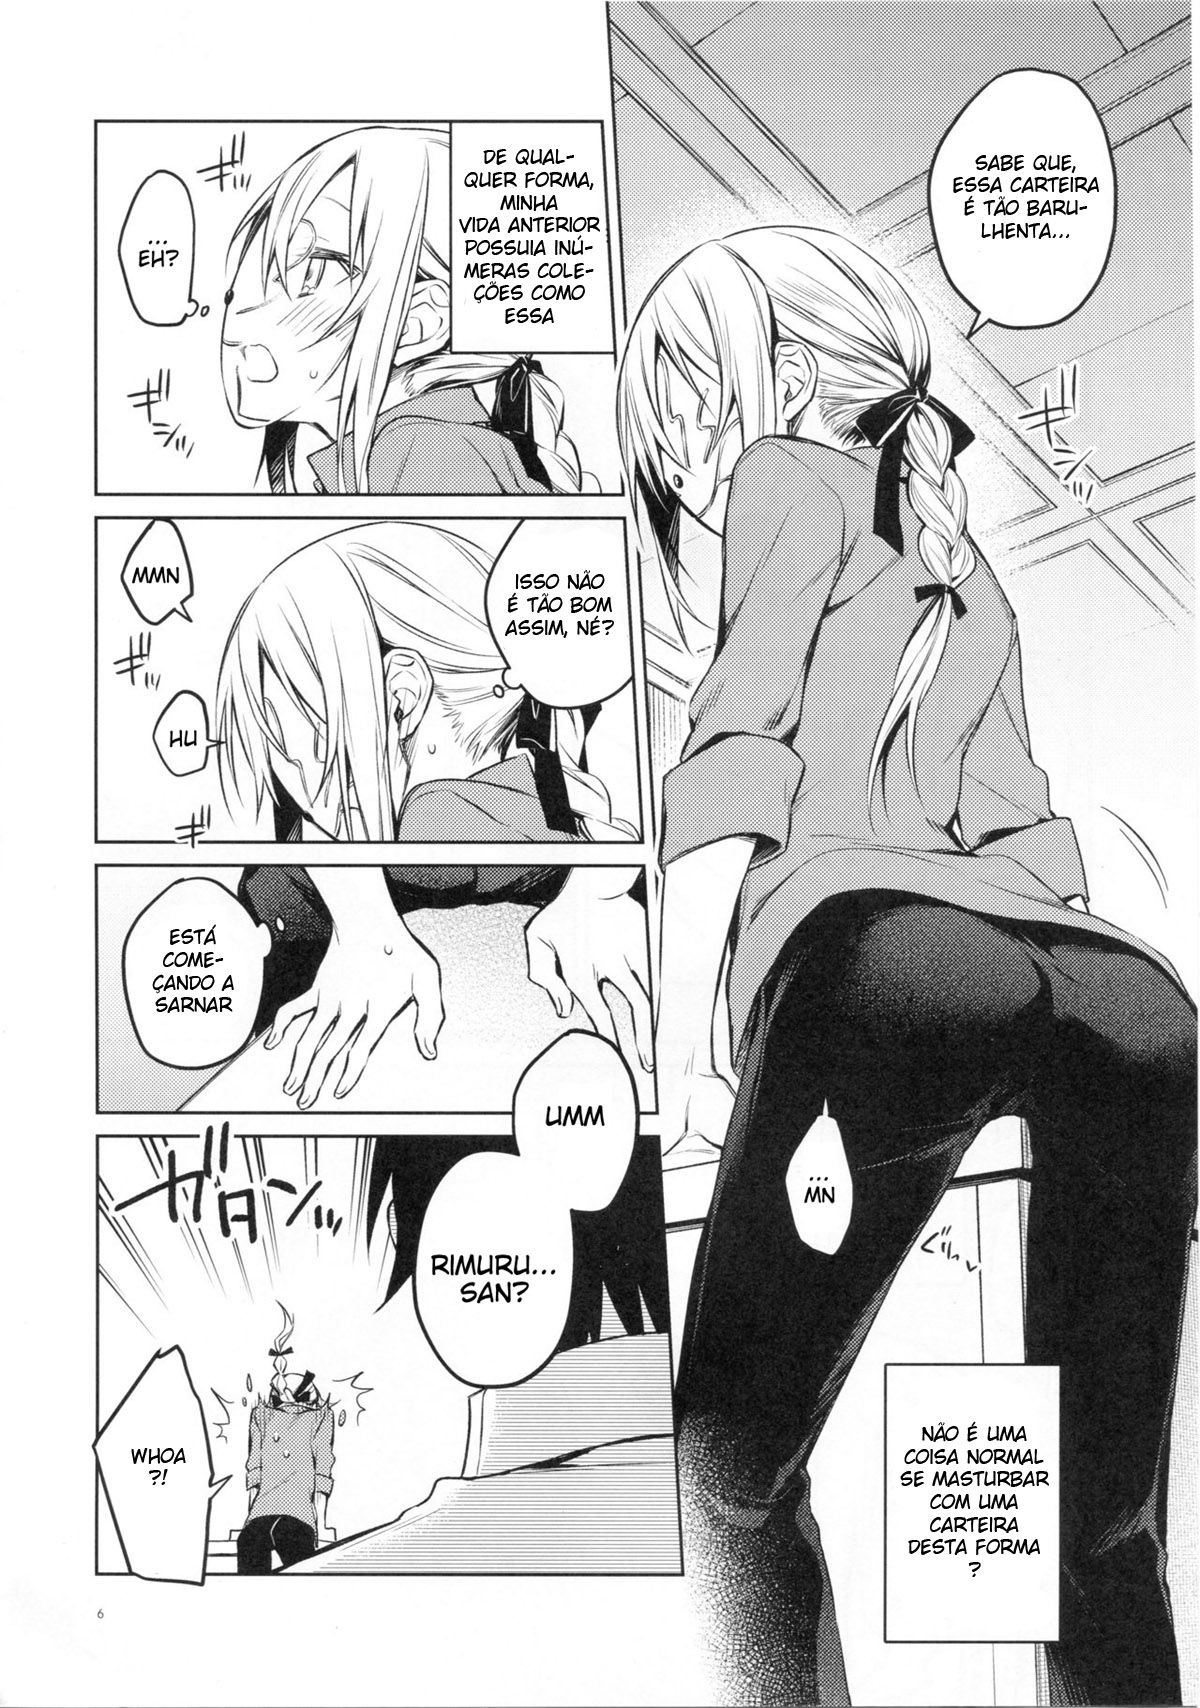 Educação Sexual para Rimuru Sensei!